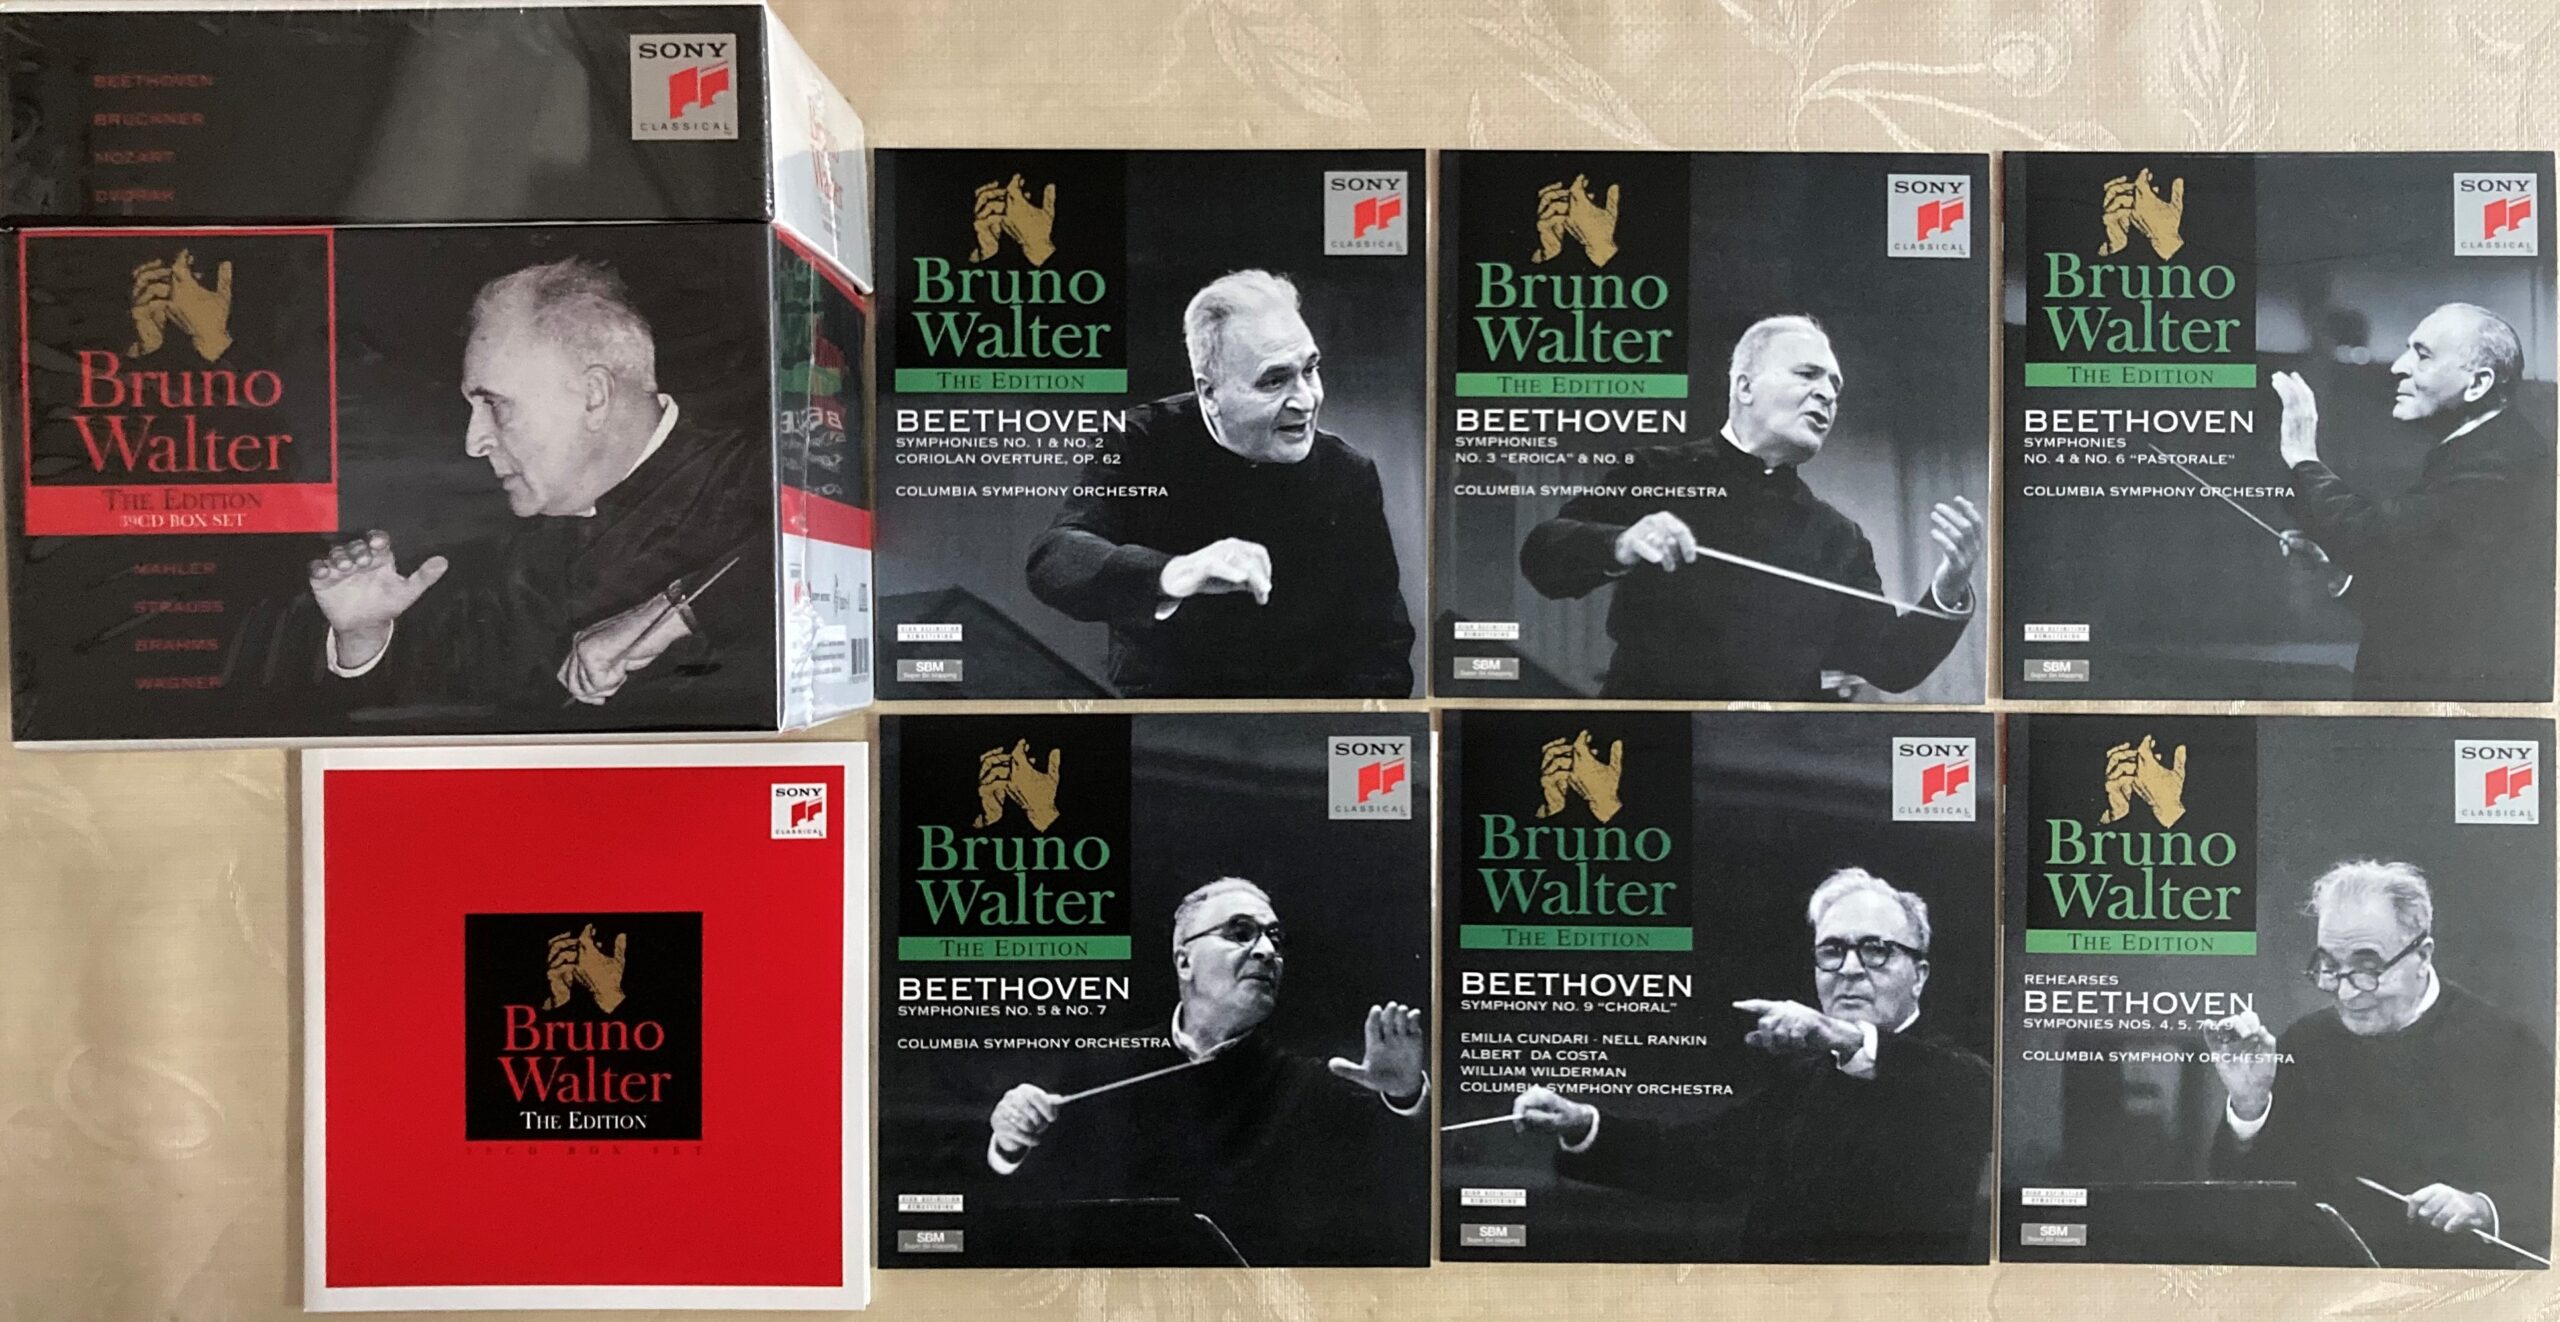 ブルーノ・ワルターの最新のＣＤボックスの写真。ボックスとベートーヴェンの交響曲のＣＤを並べて撮ったもの